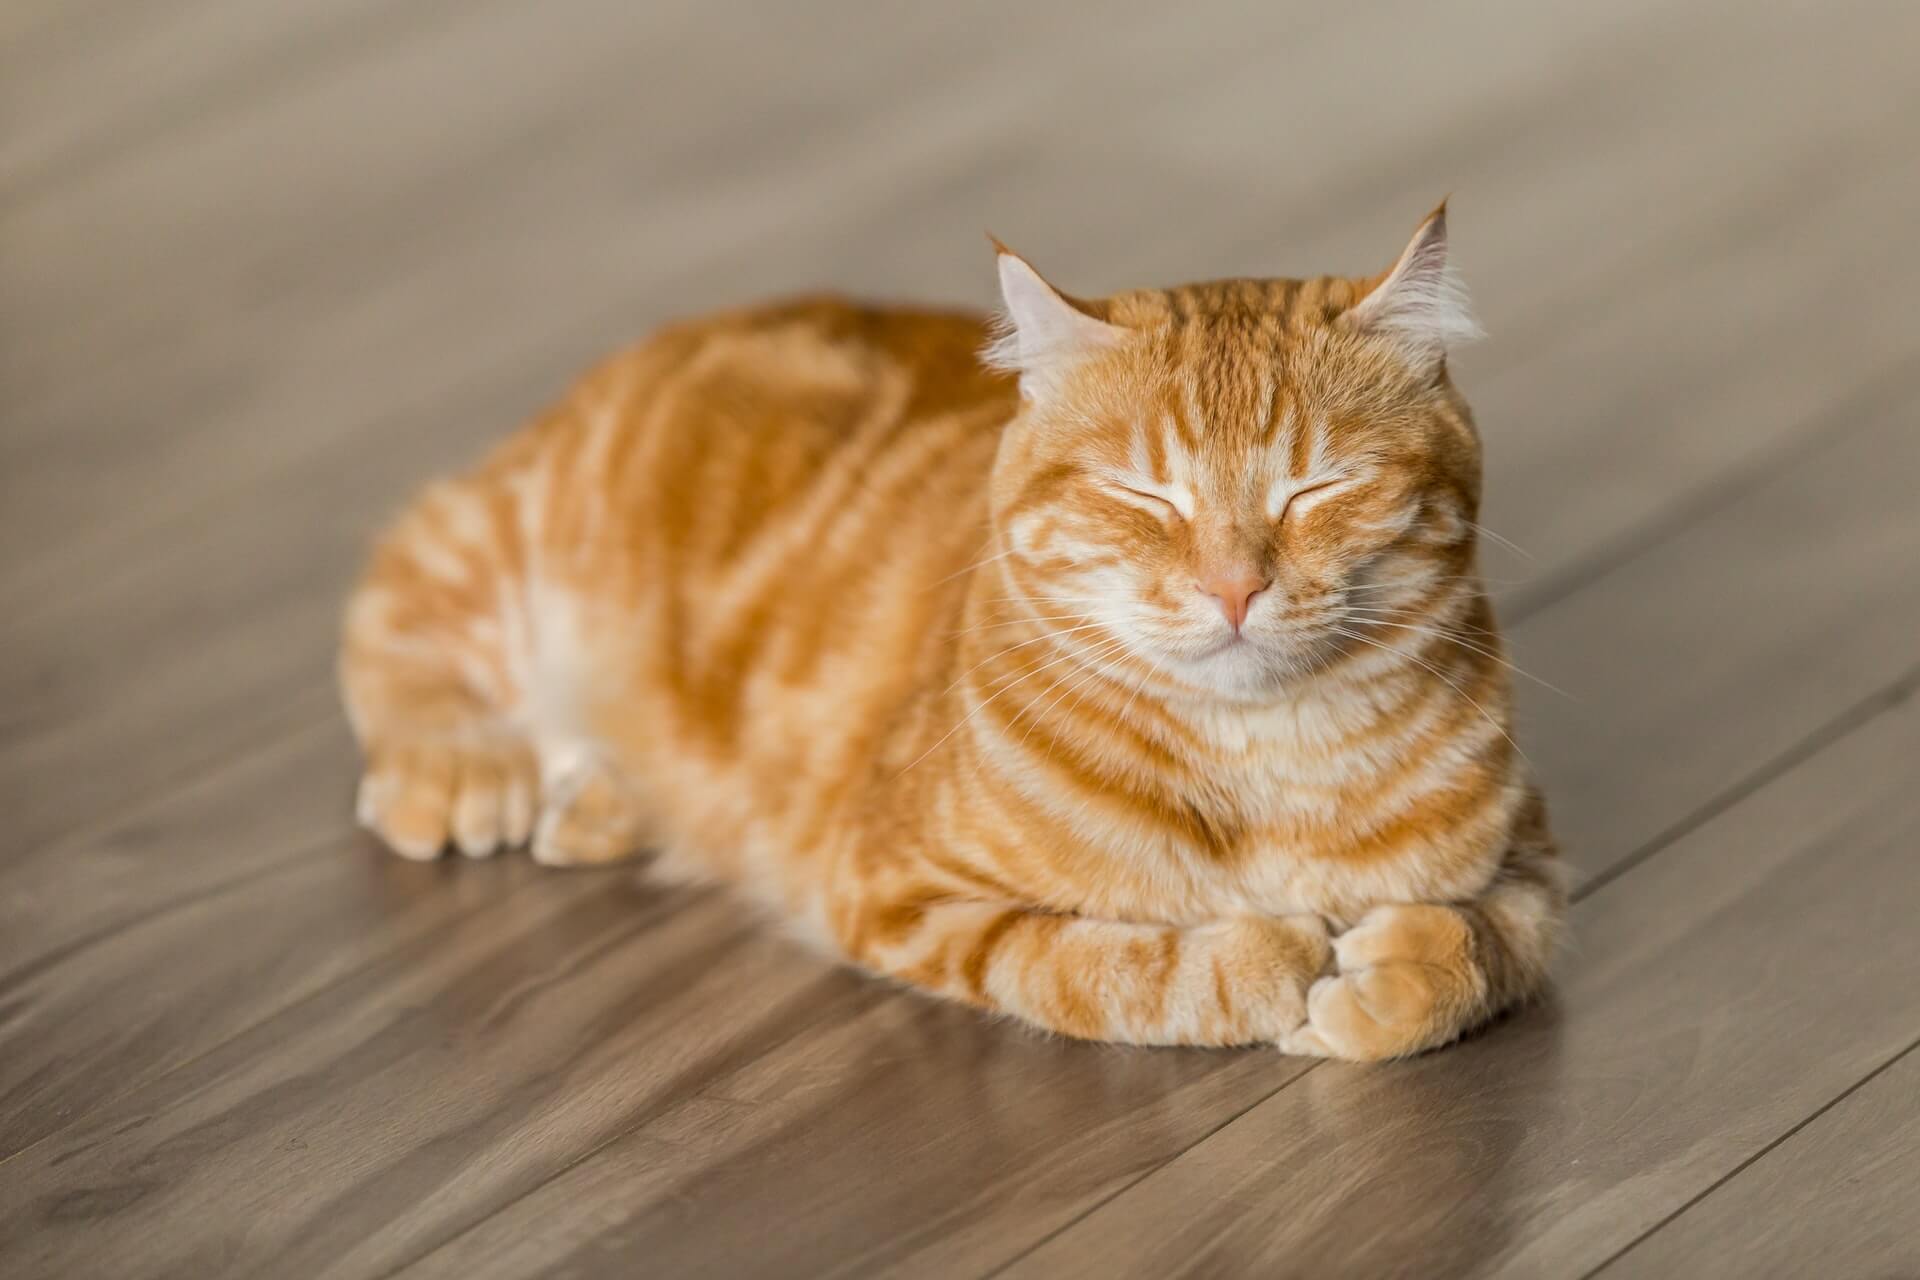 Satisfied Cat on a warm wooden floor